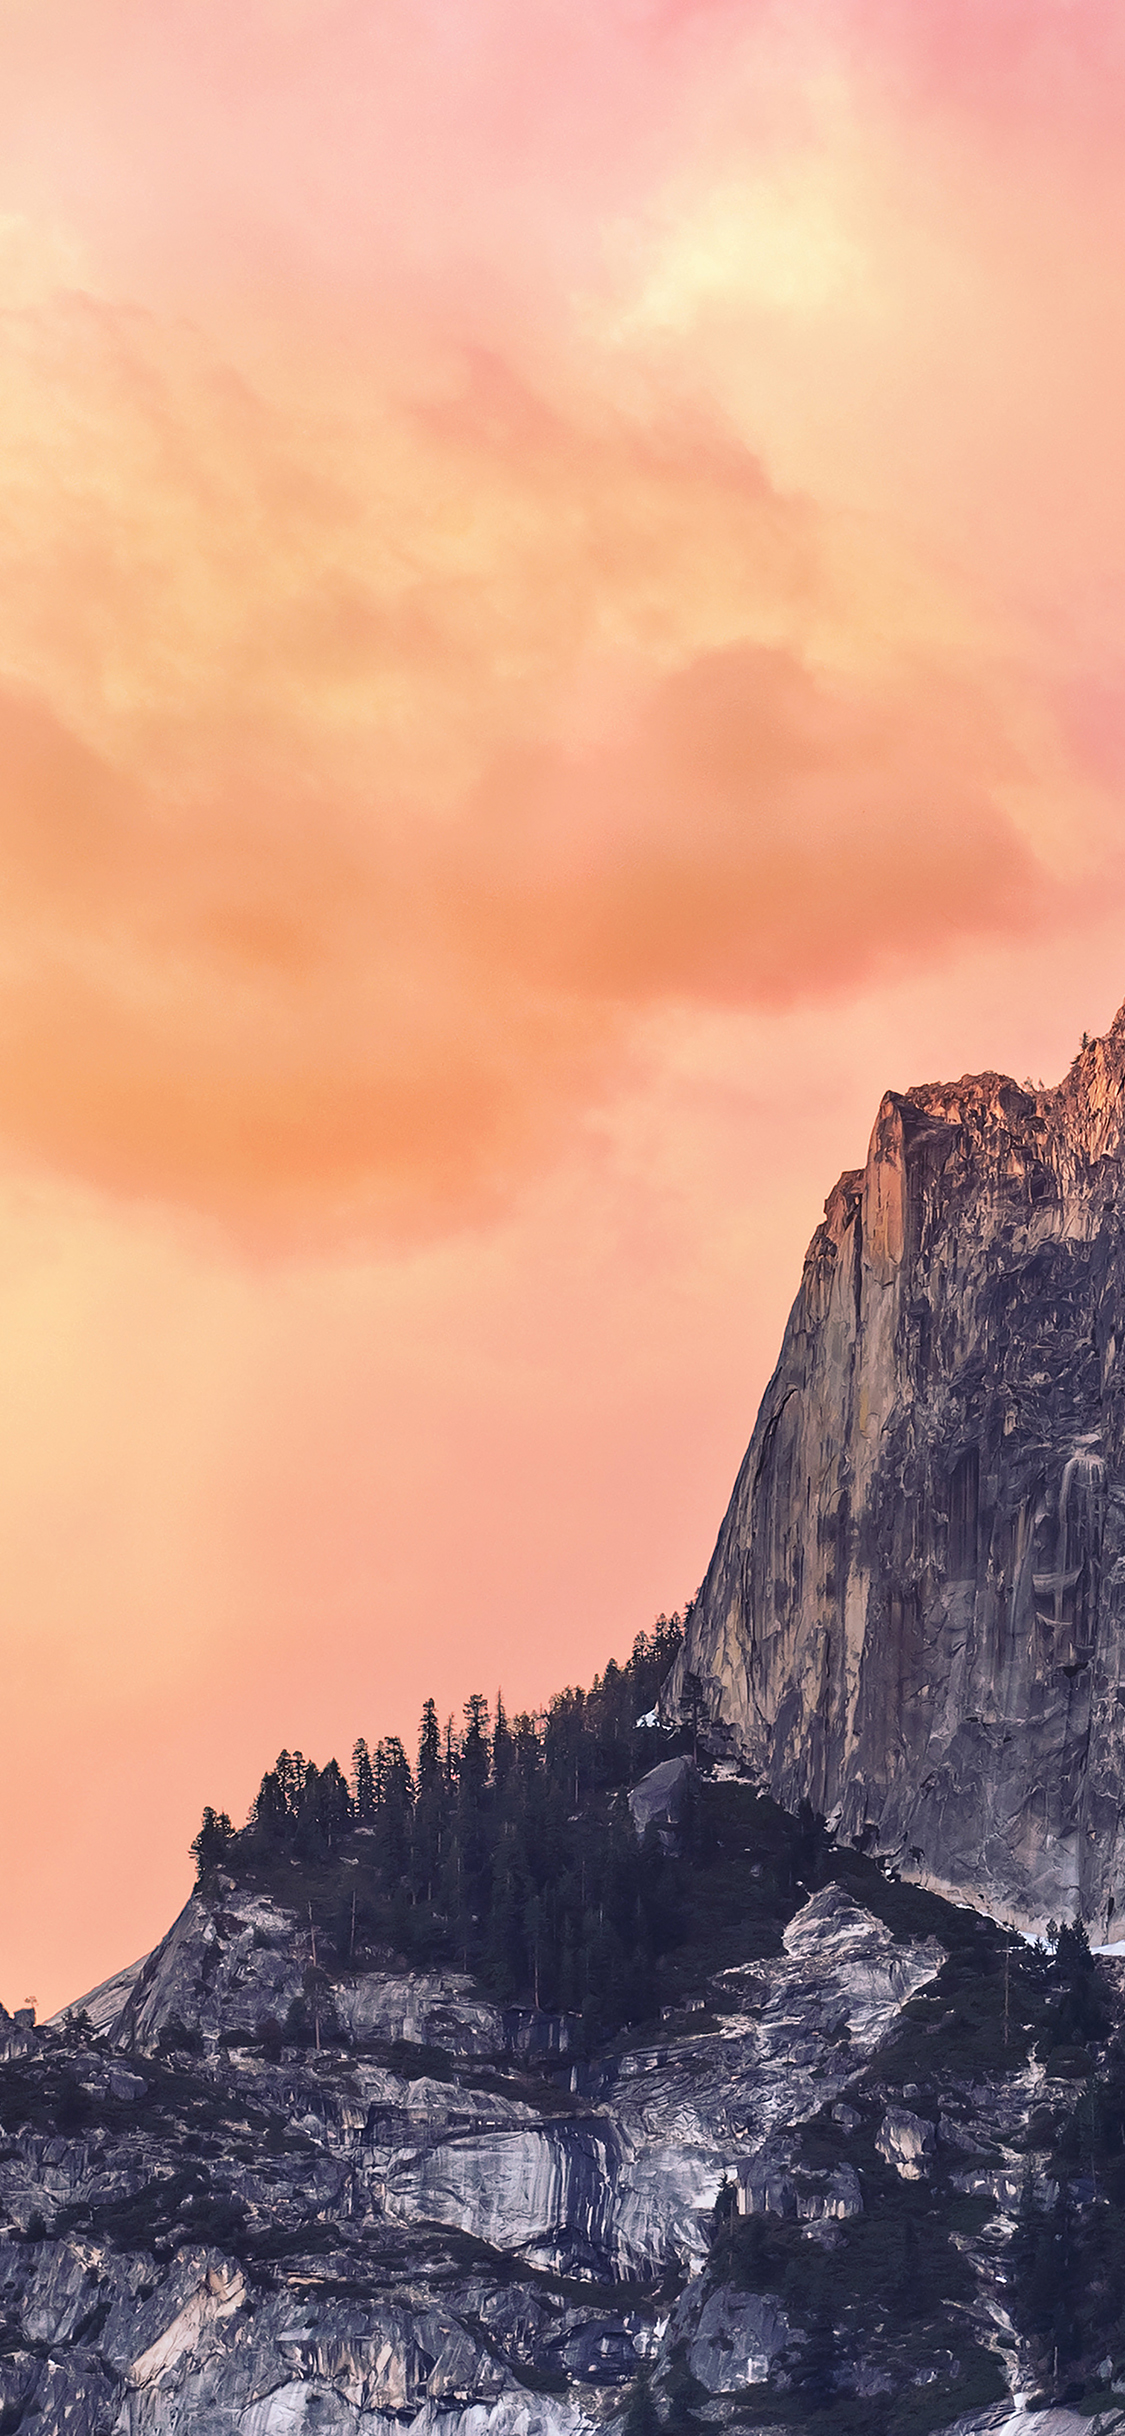 Mac Os X Yosemite For Ipad